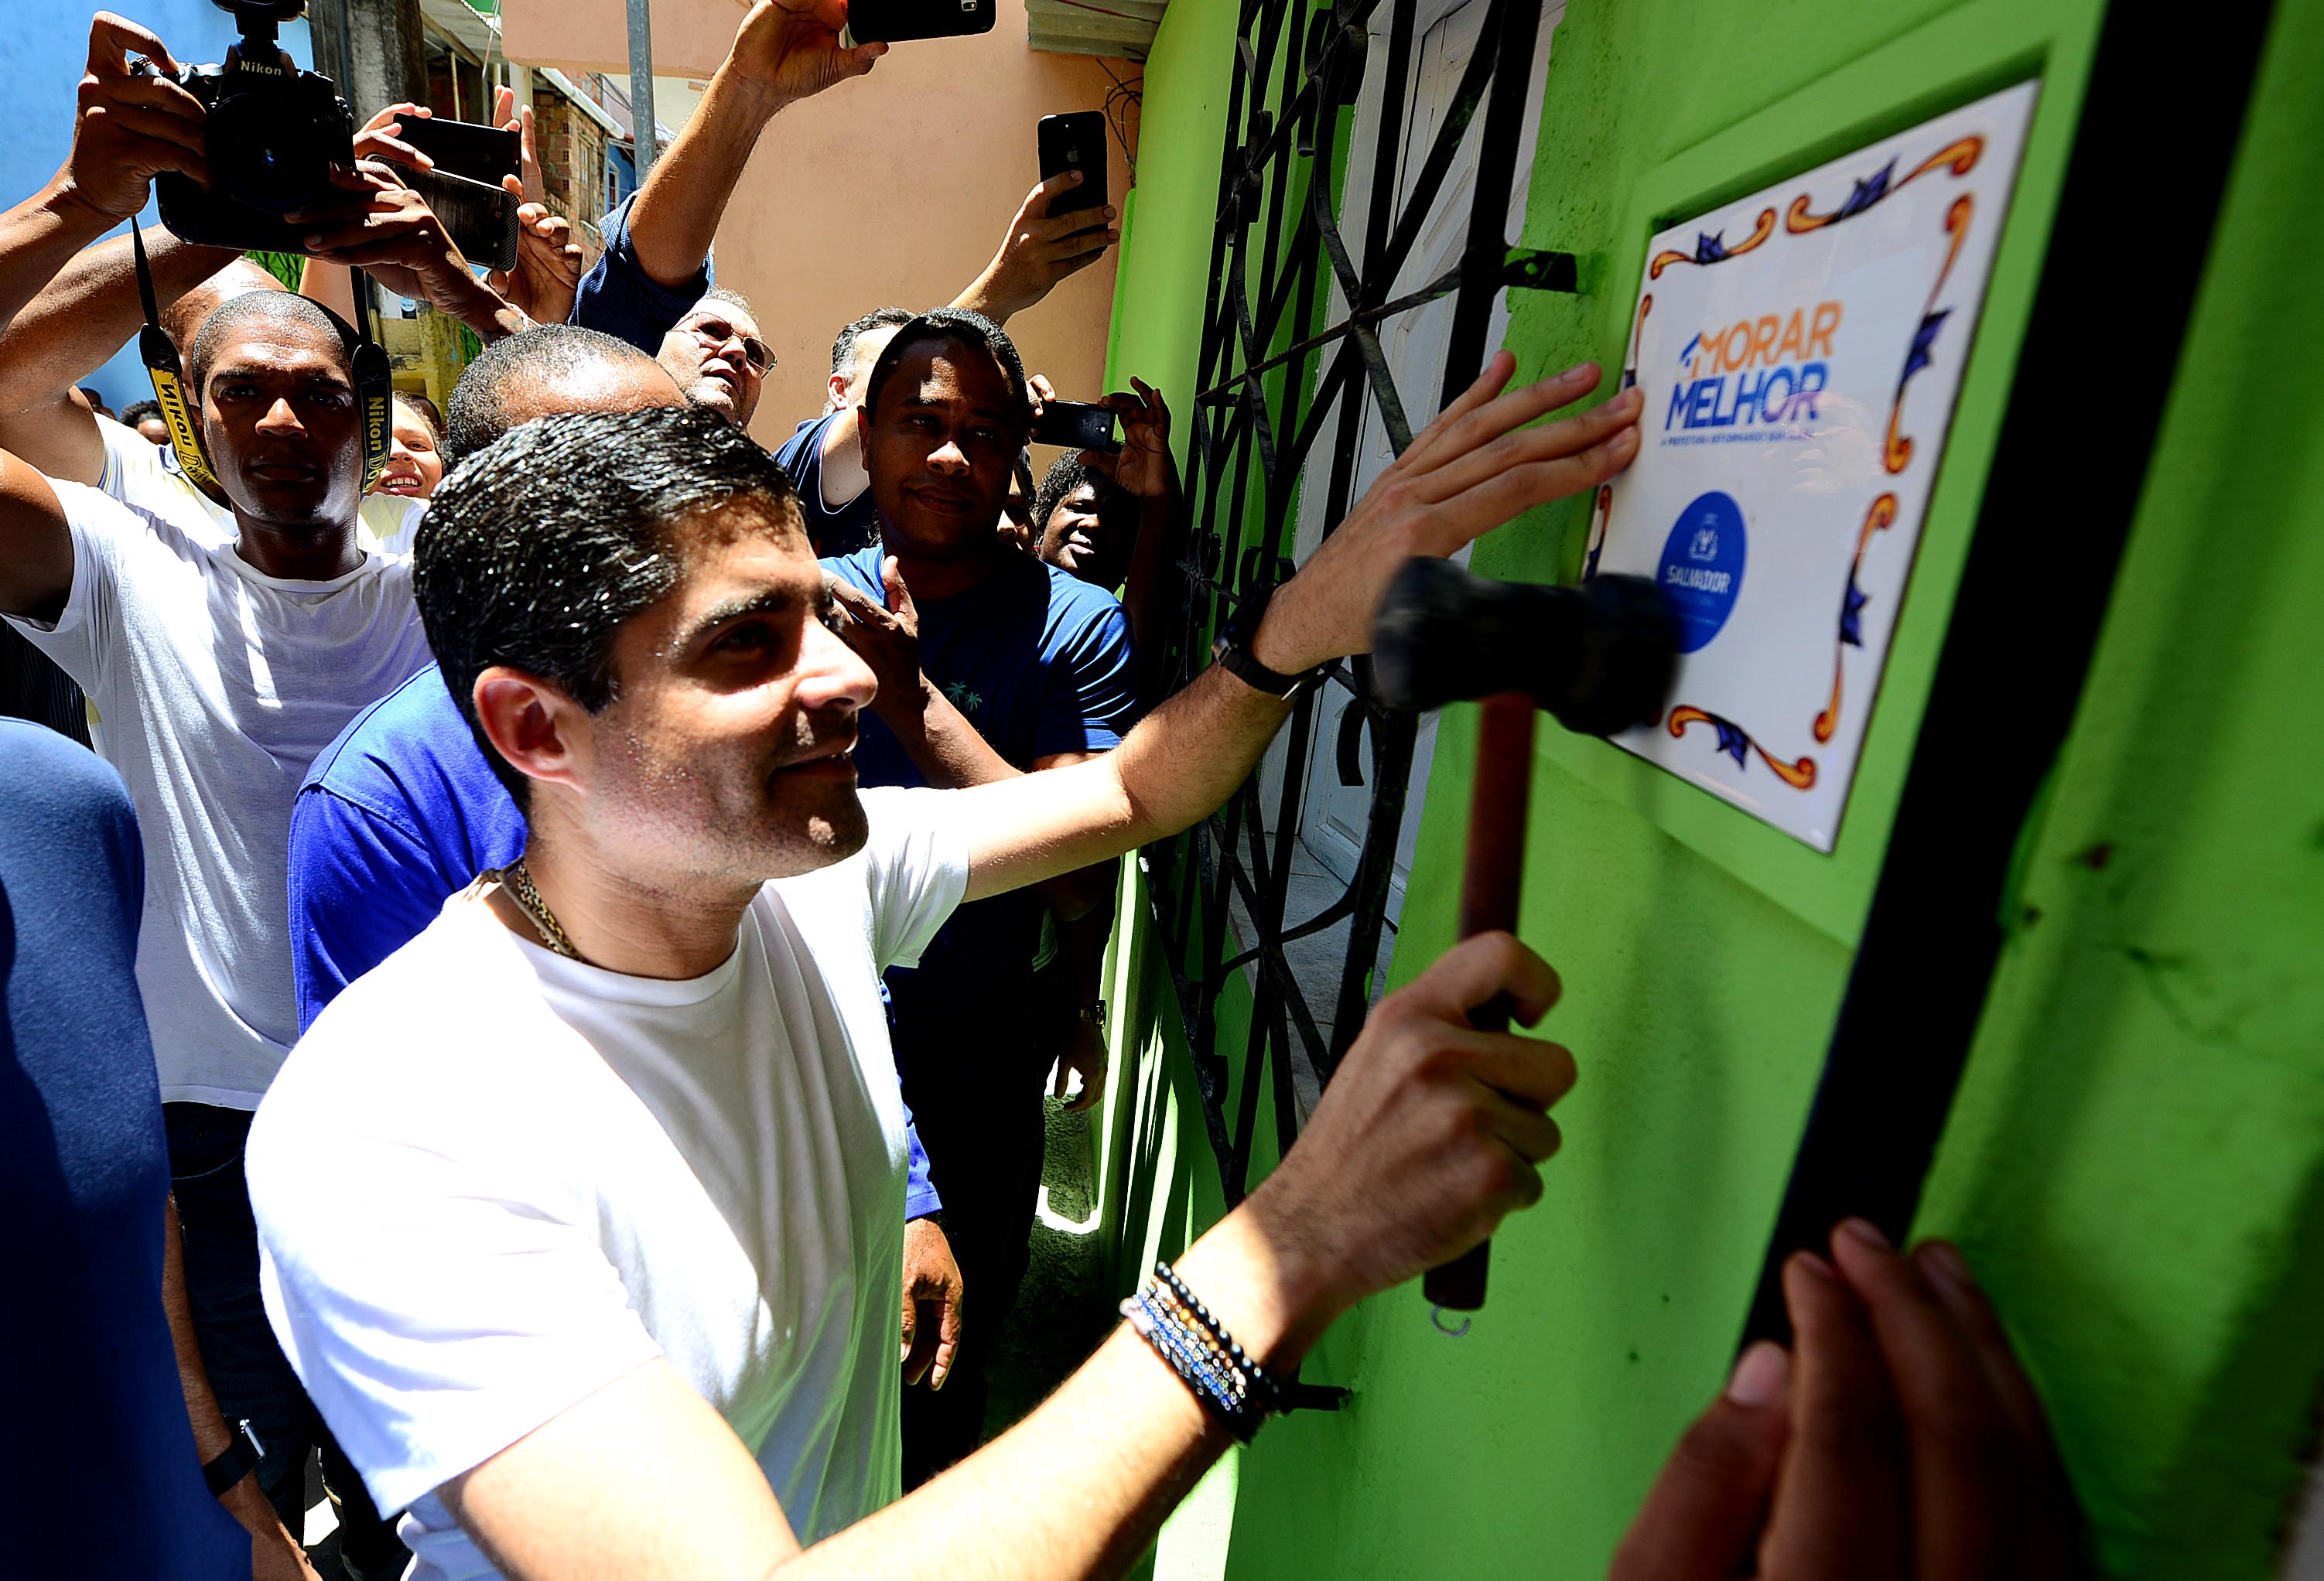 Morar Melhor entrega 368 residências em dois bairros de Salvador